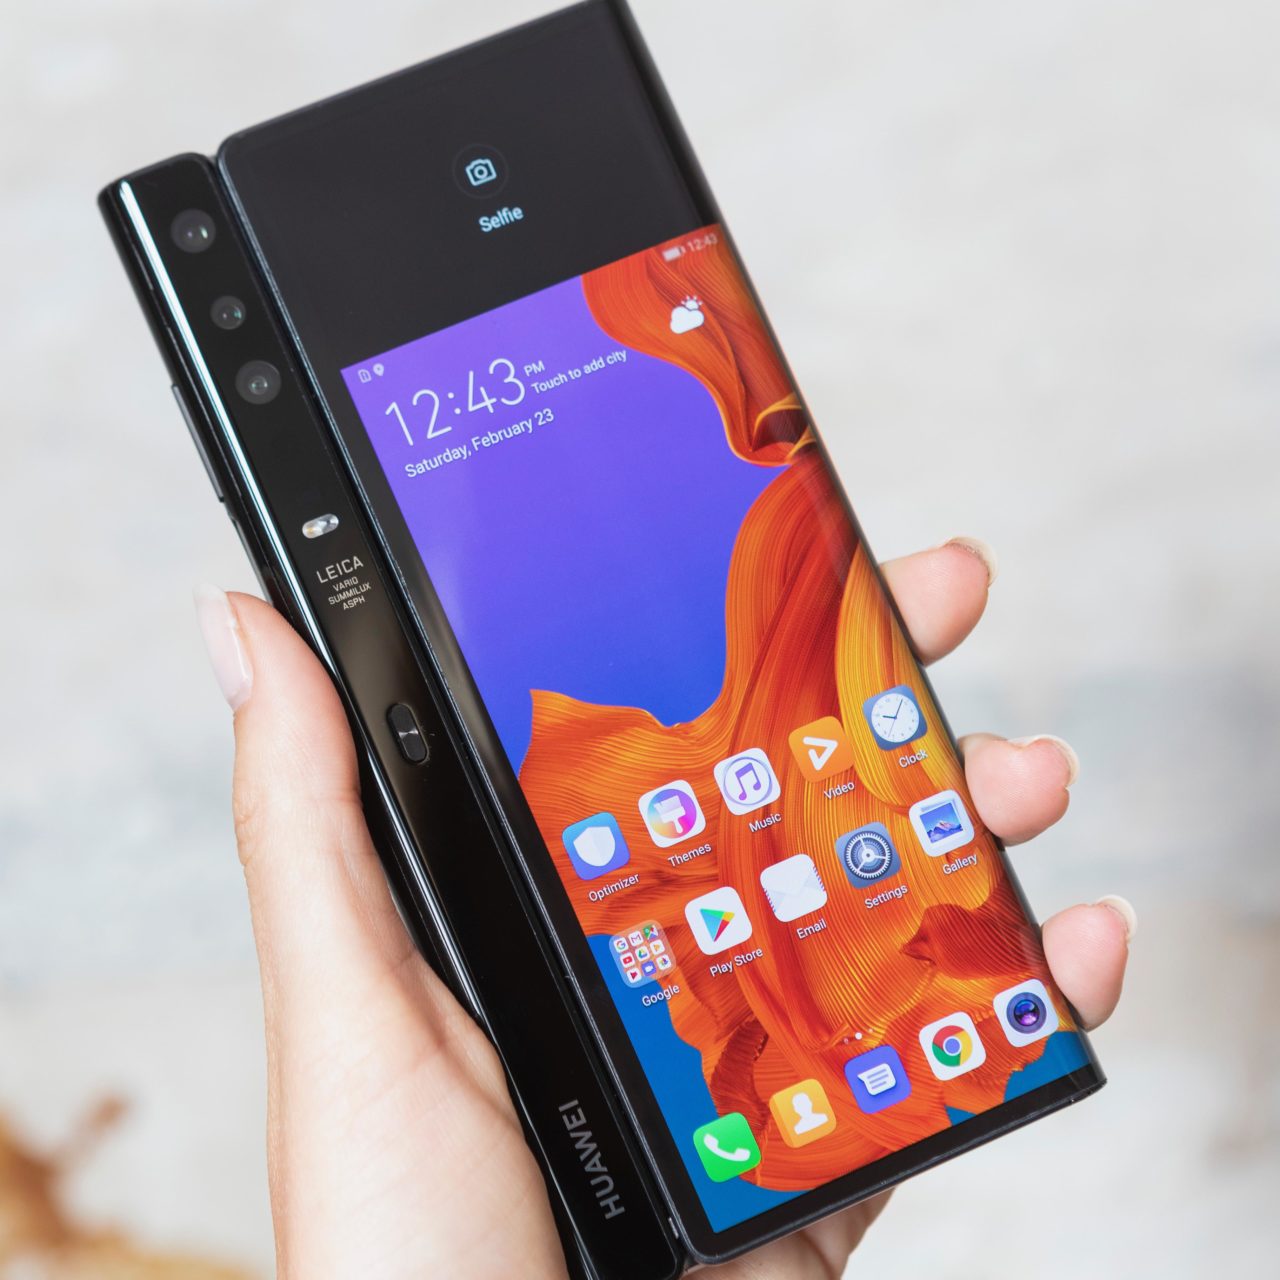 Huawei confirma que trabaja en un teléfono plegable con 5G